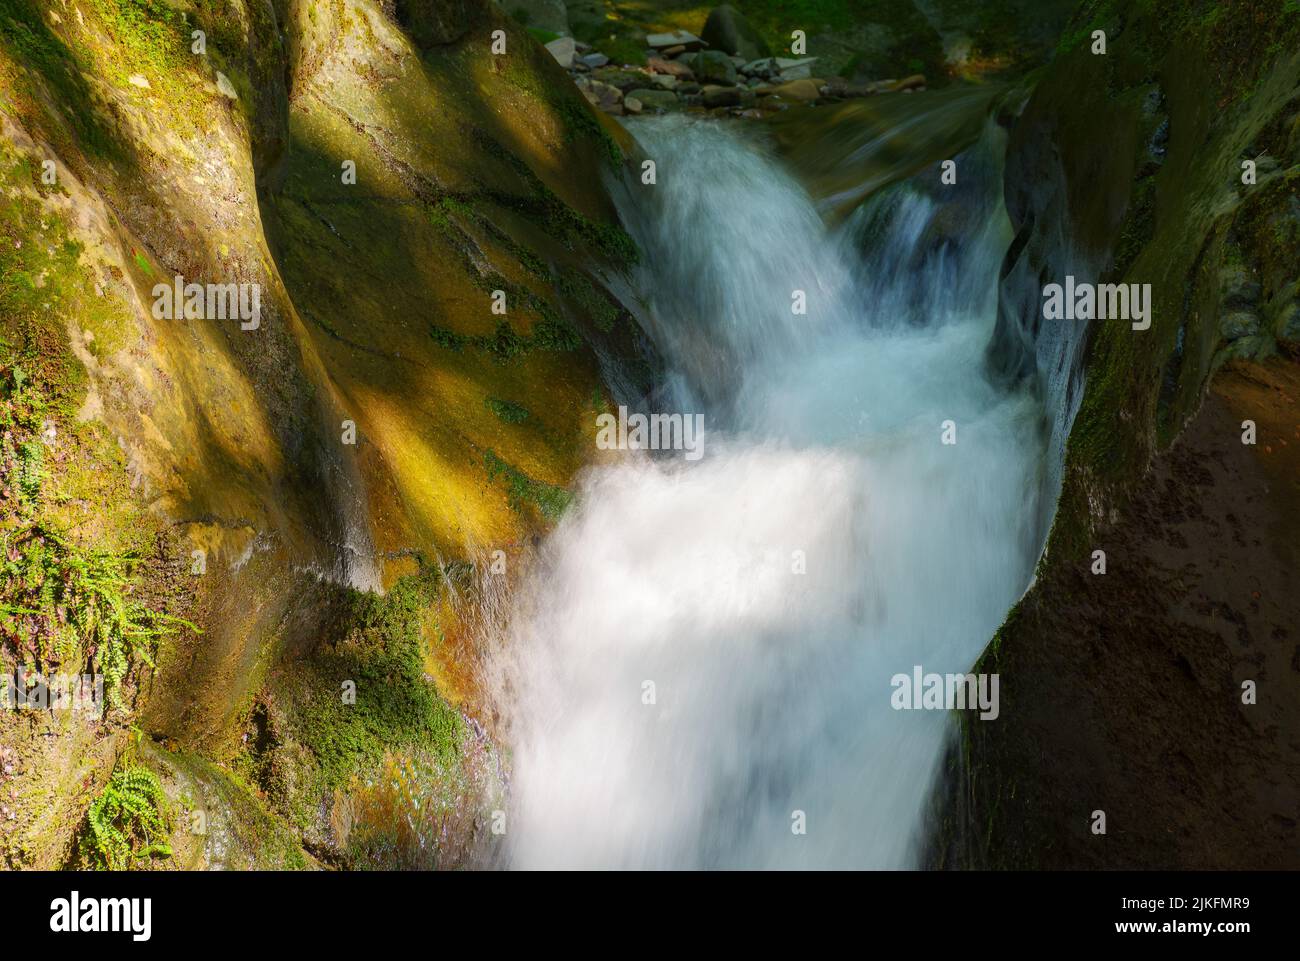 Dünner, aber kraftvoller Wasserfall zwischen den Felsbrocken. Erfrischender Sommer Natur Hintergrund im Wald Stockfoto